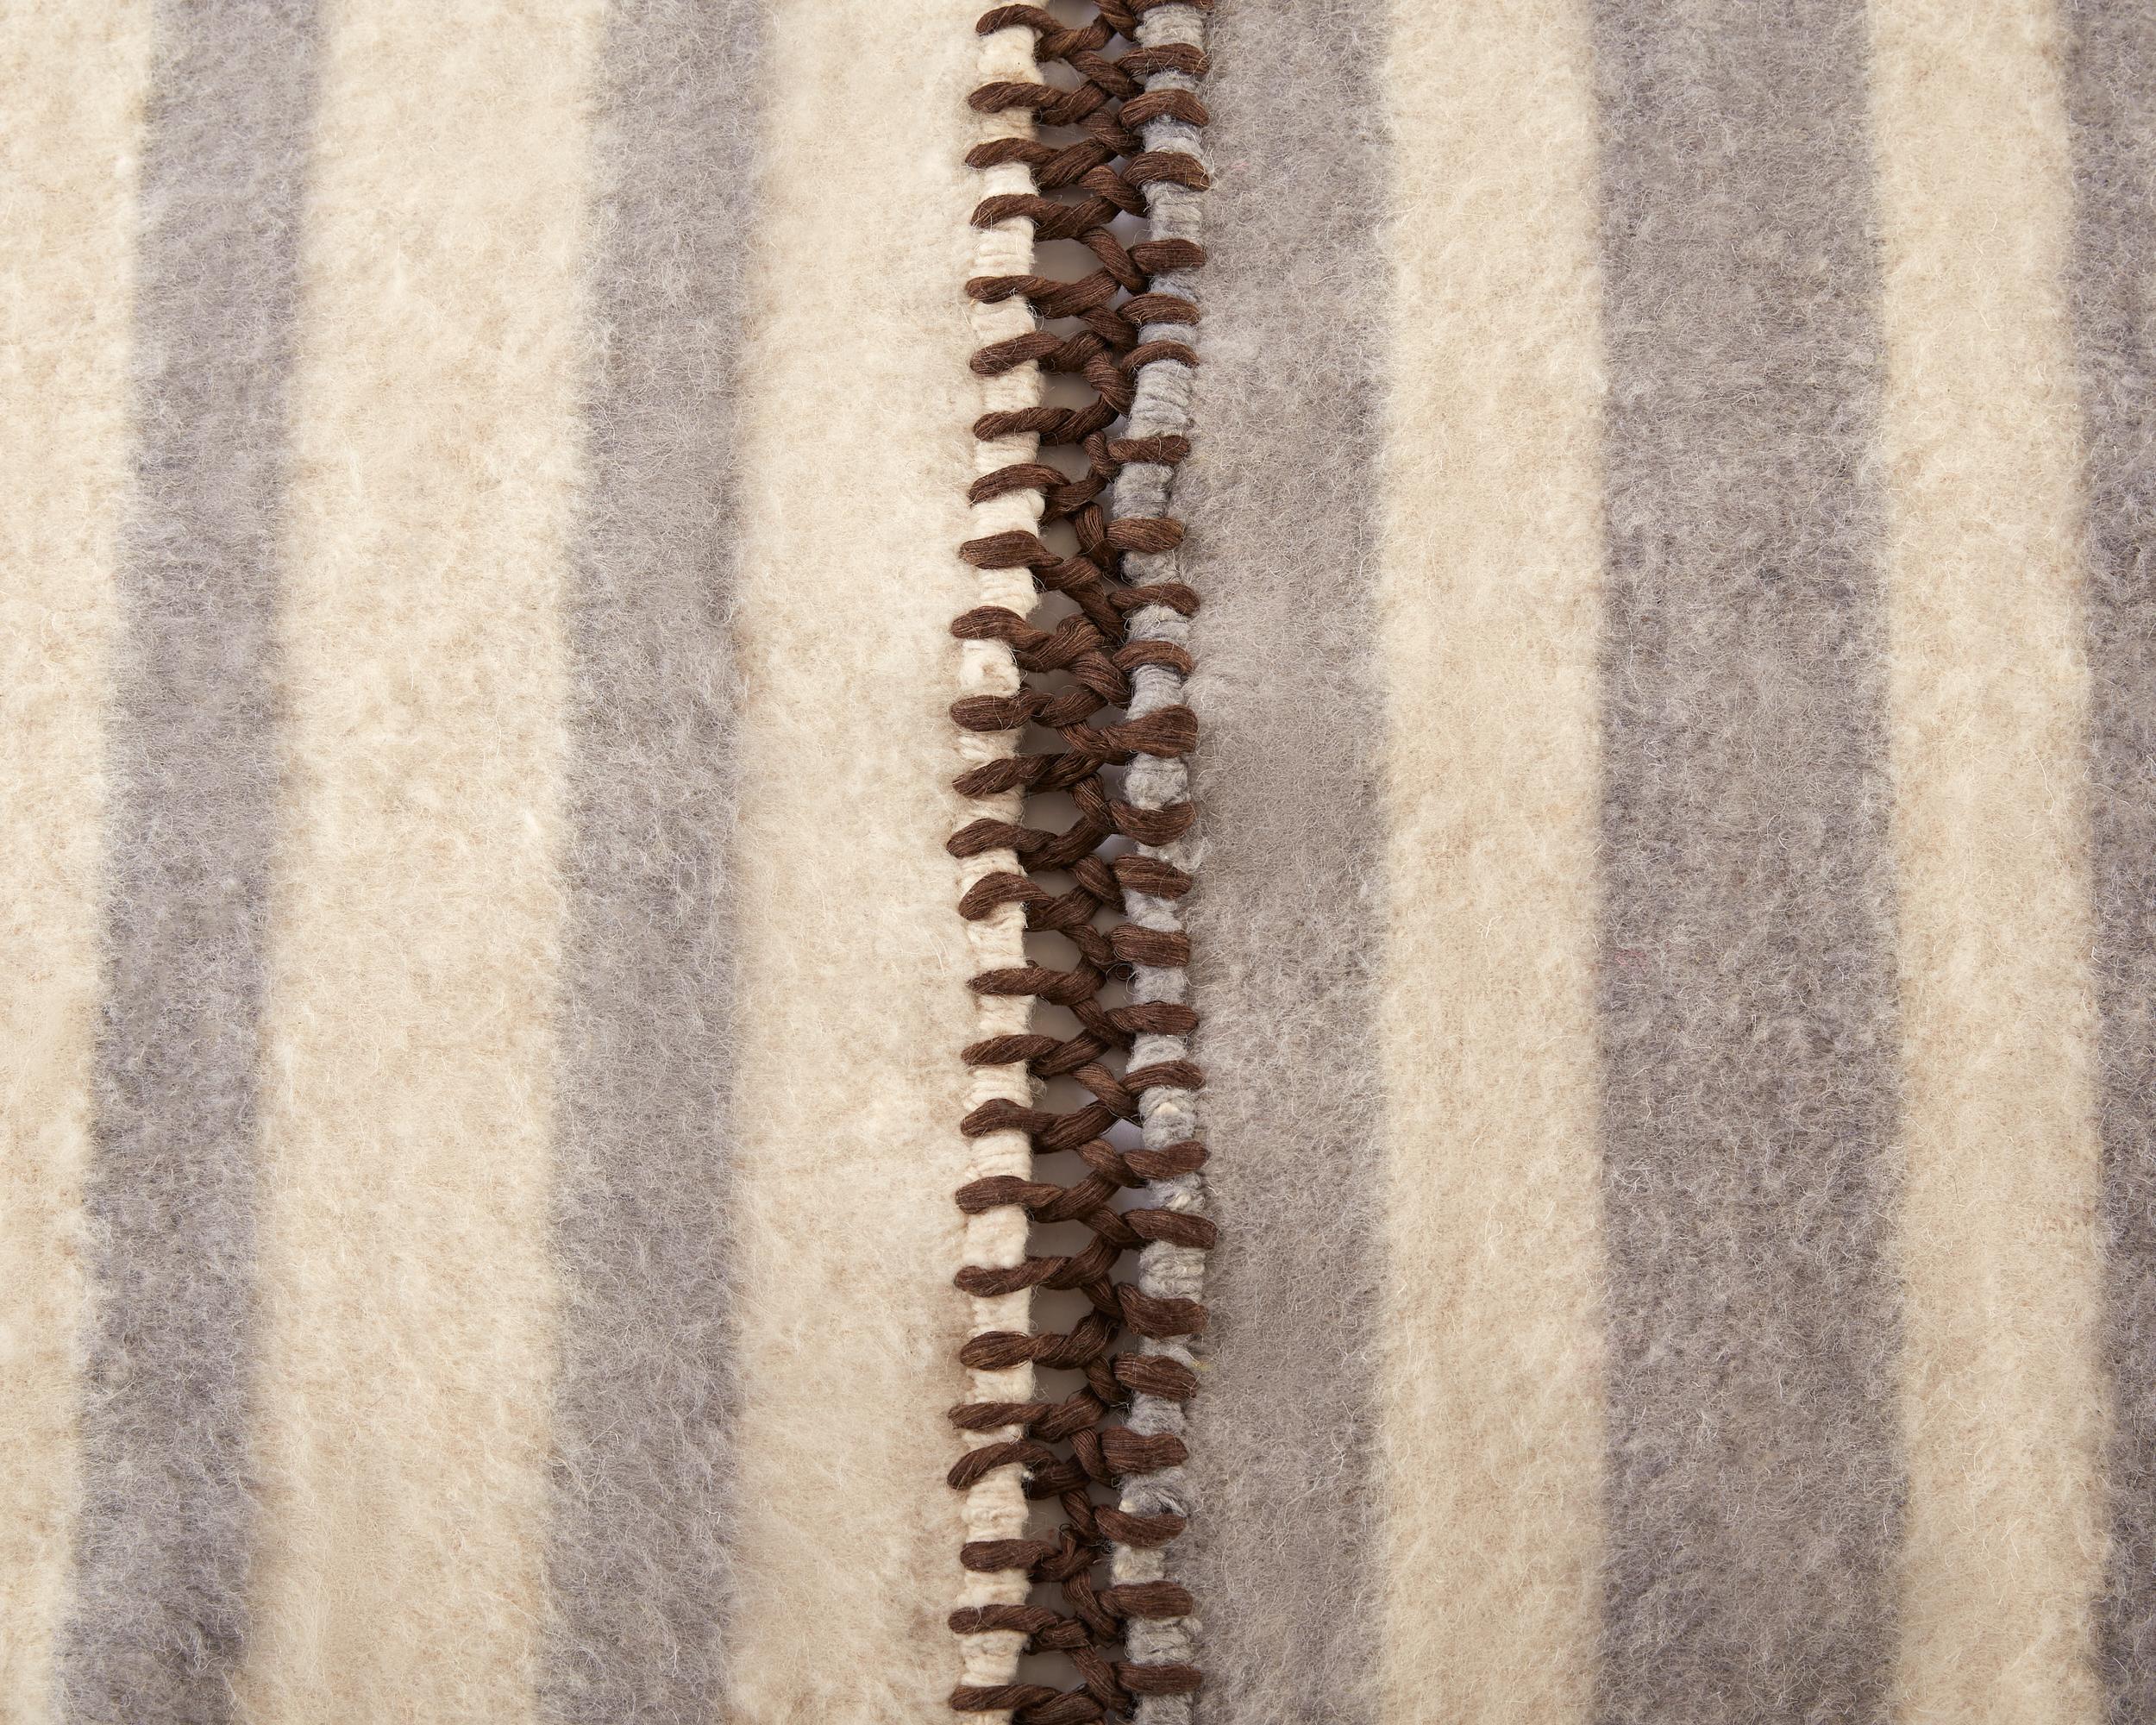 La couverture en laine à rayures fait partie de notre toute nouvelle collection d'articles pour la maison. Il est fabriqué sur un métier à tisser artisanal, avec du coton et de la laine naturelle provenant de Momostenango, au Guatemala. Chaque